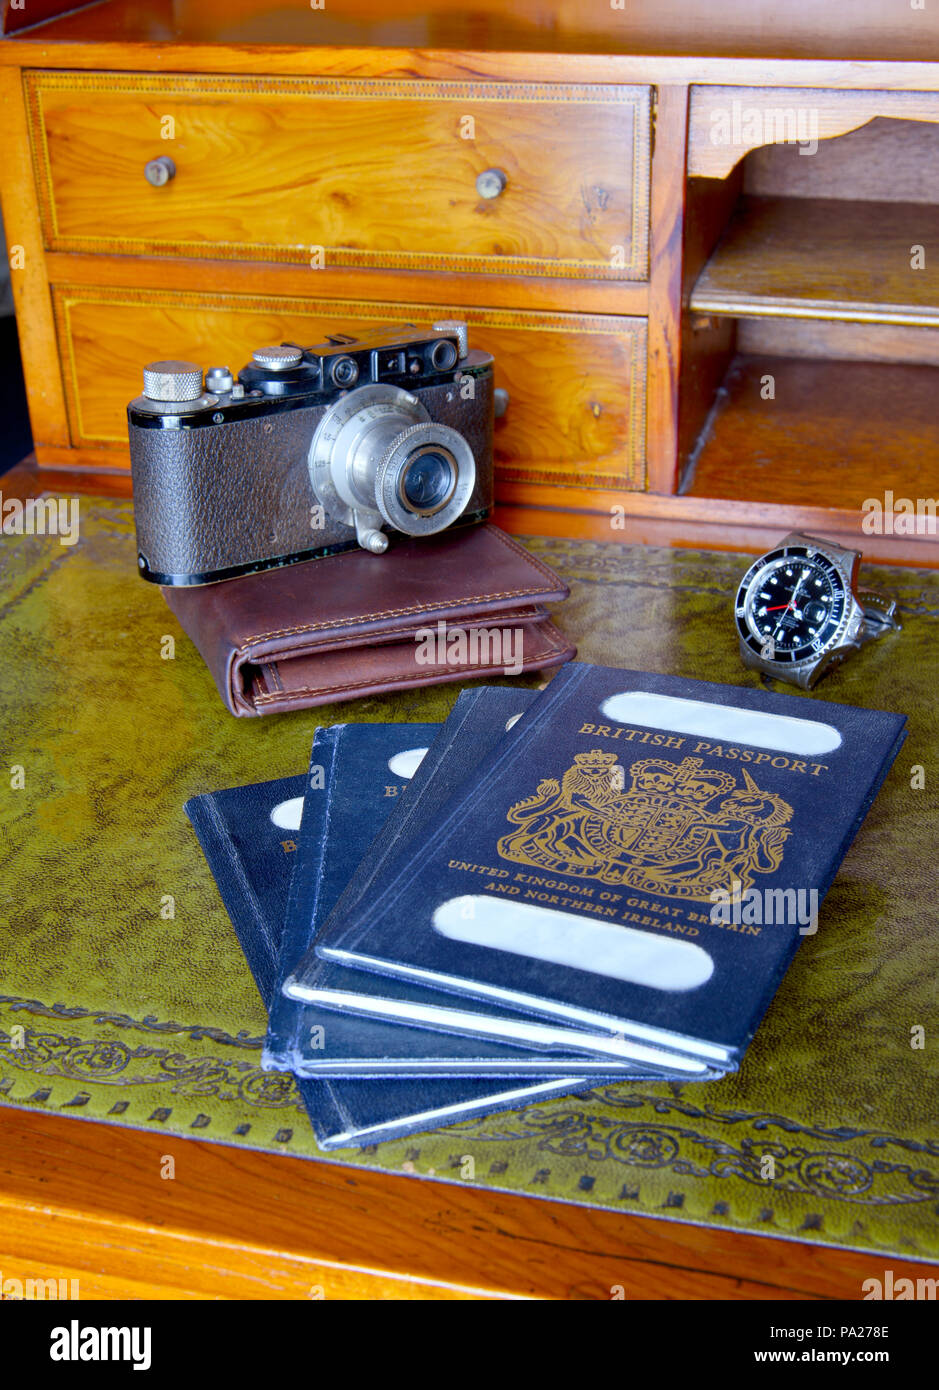 Antica scrivania con passaporti e vecchia leica fotocamera, orologio rolex con nomi tranciati Foto Stock